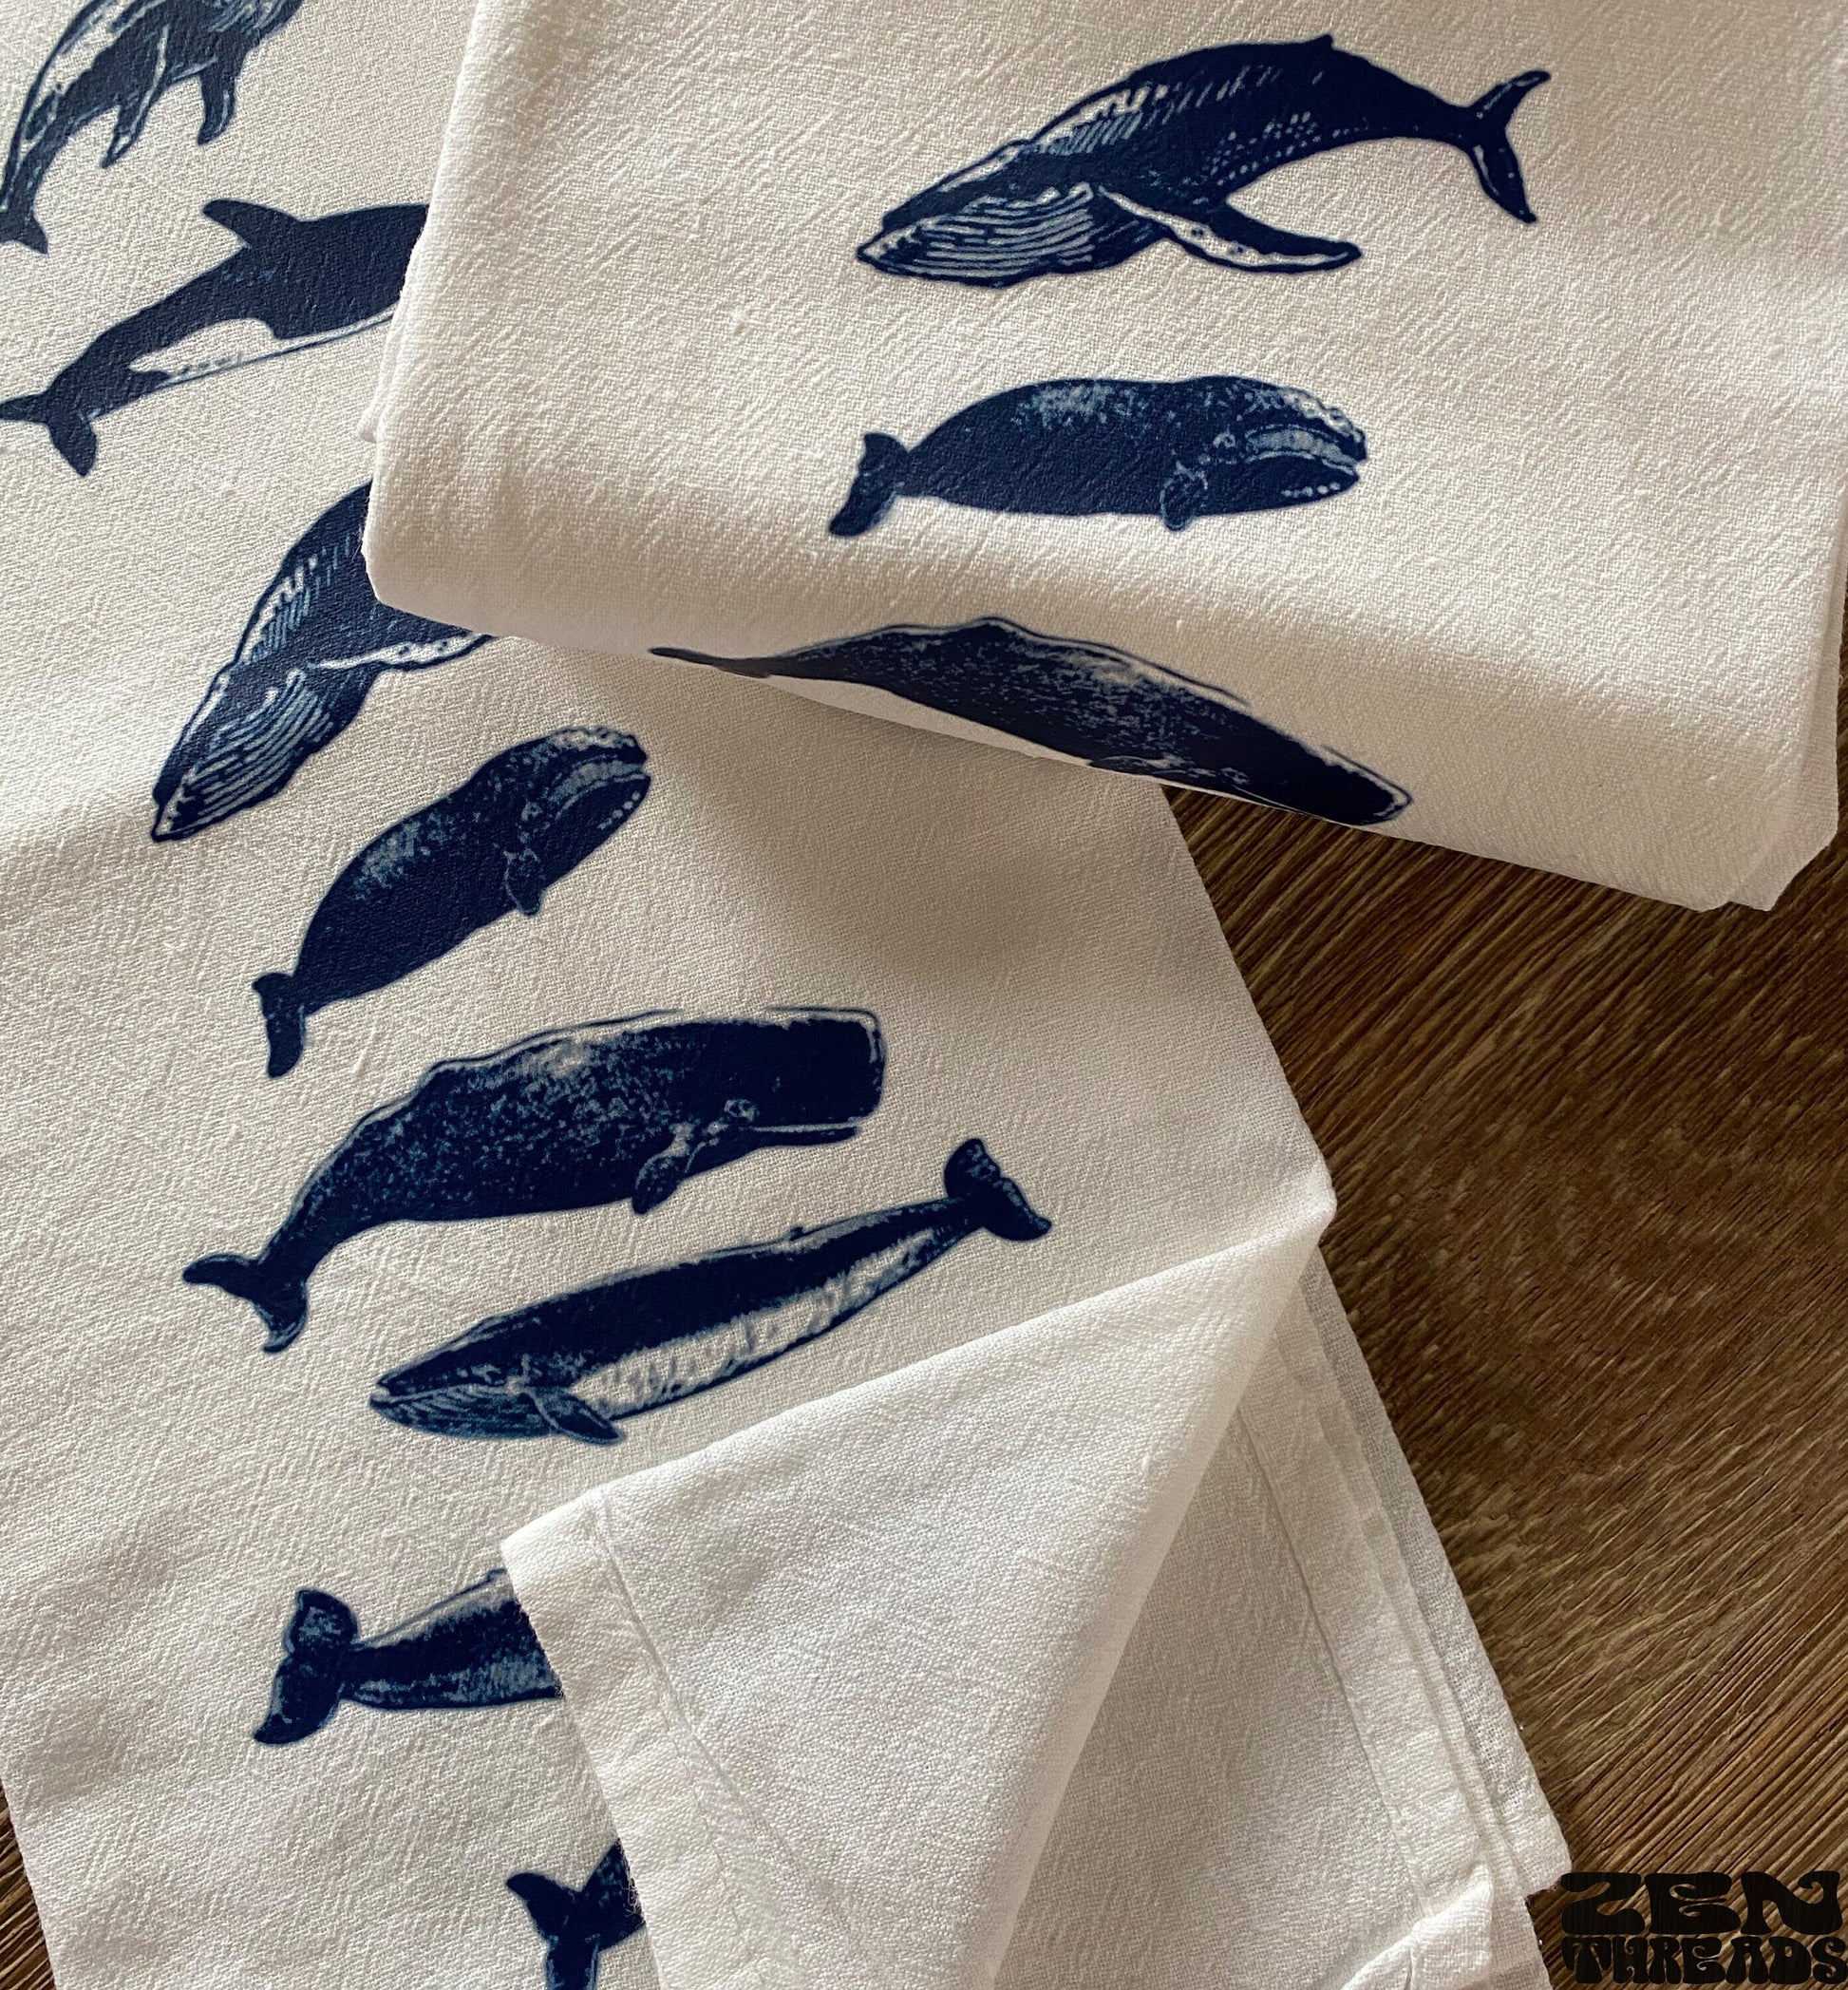 WHALES CollectionFlour Sack Kitchen Towels Flour Sack Bar Towels Natural Cotton tea towel gift